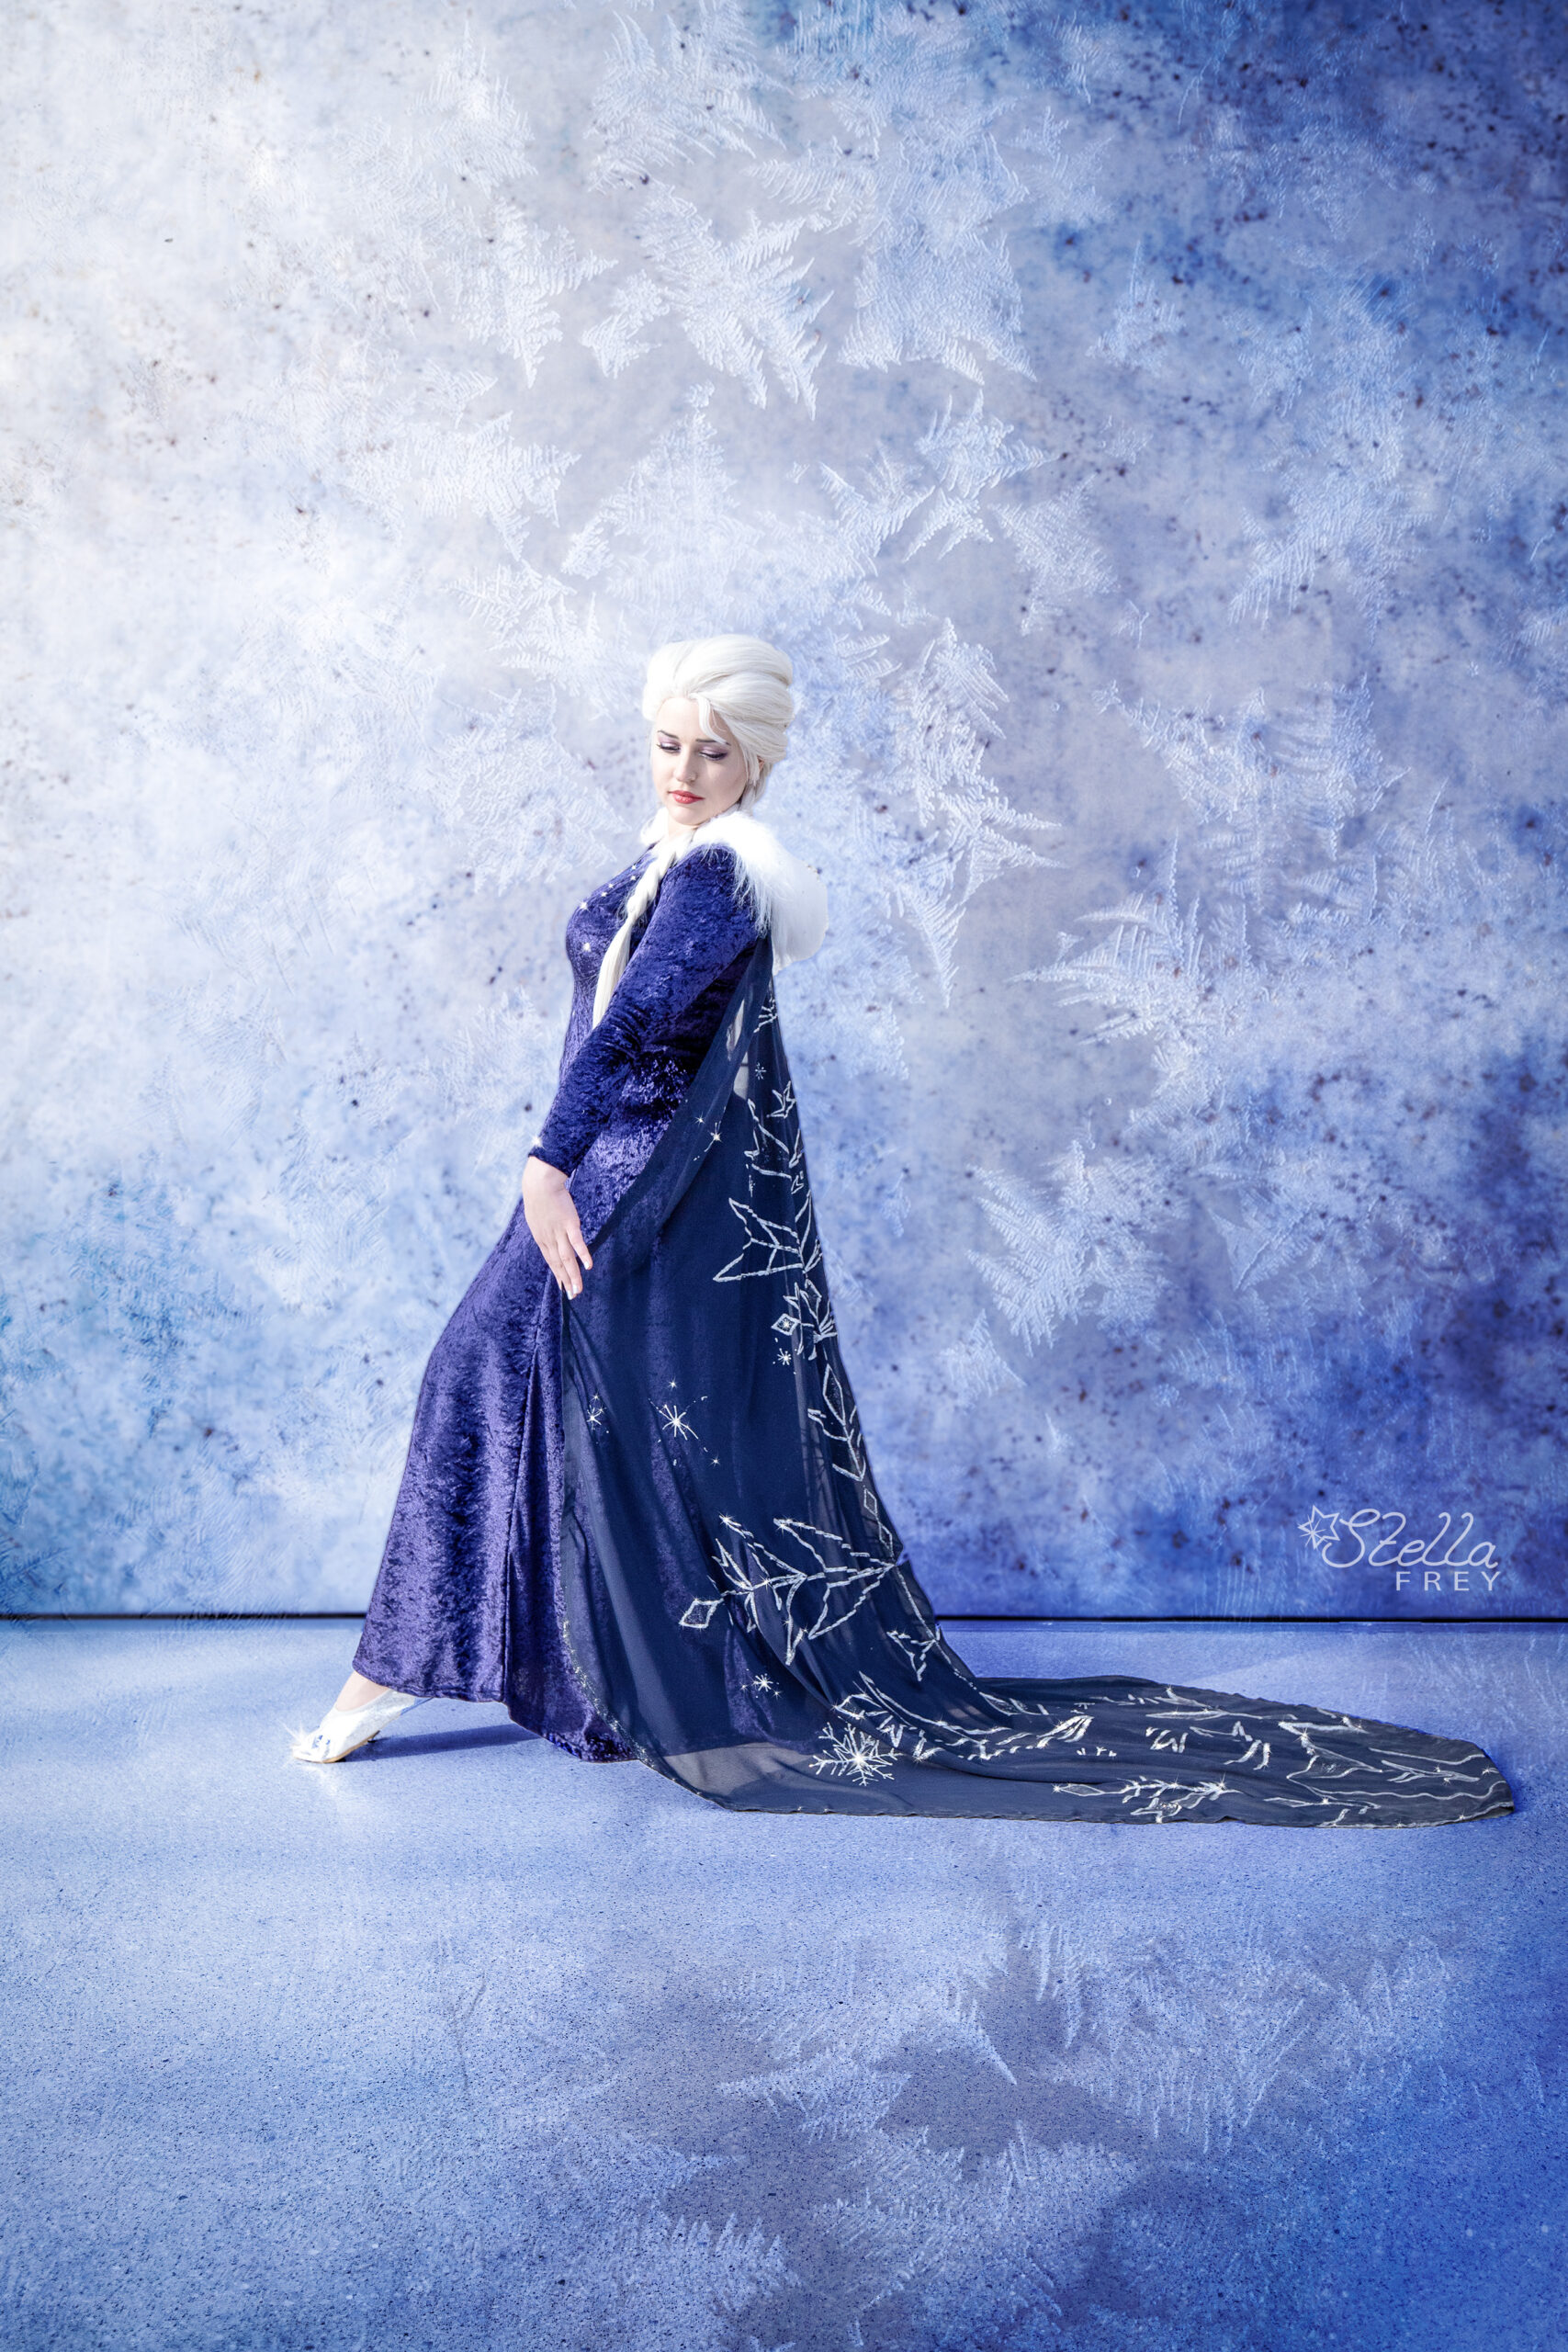 Stella Frey – Elsa – Die Eiskönigin – Olaf taut auf